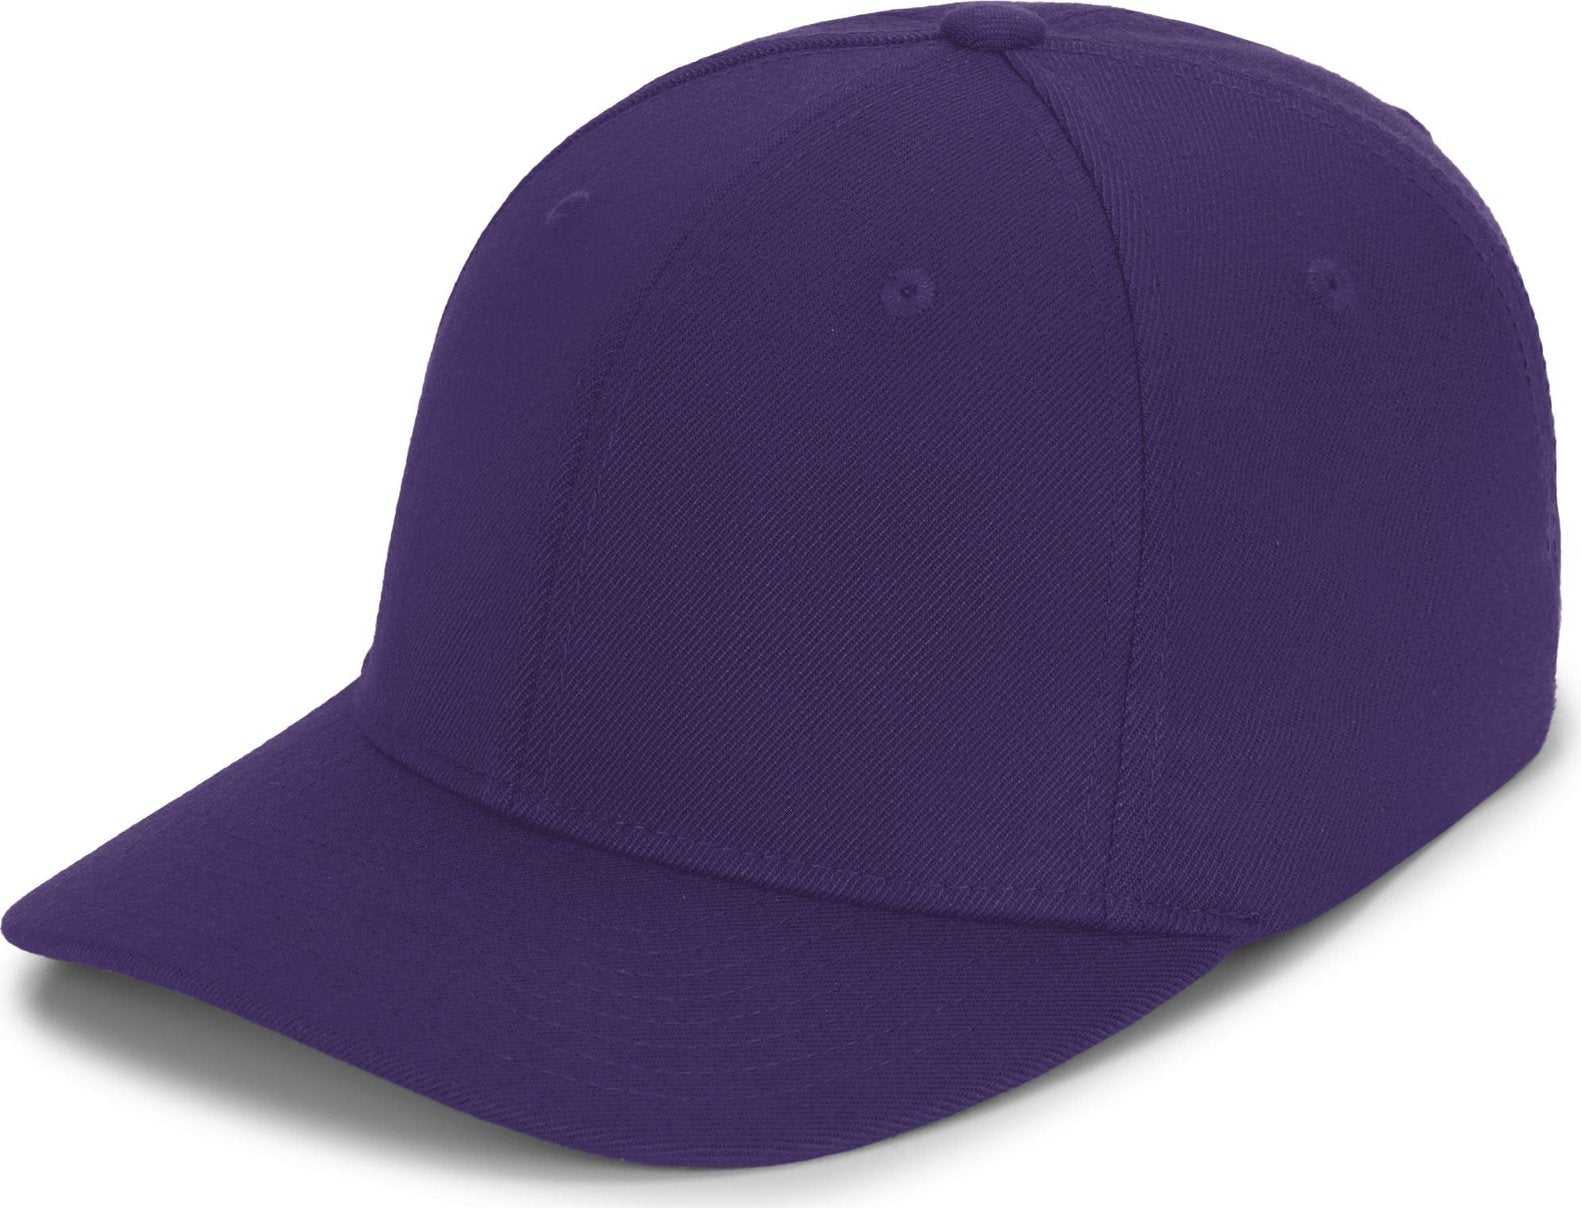 Pacific Headwear P821 Pro Wool Pacflex Cap - Purple - HIT a Double